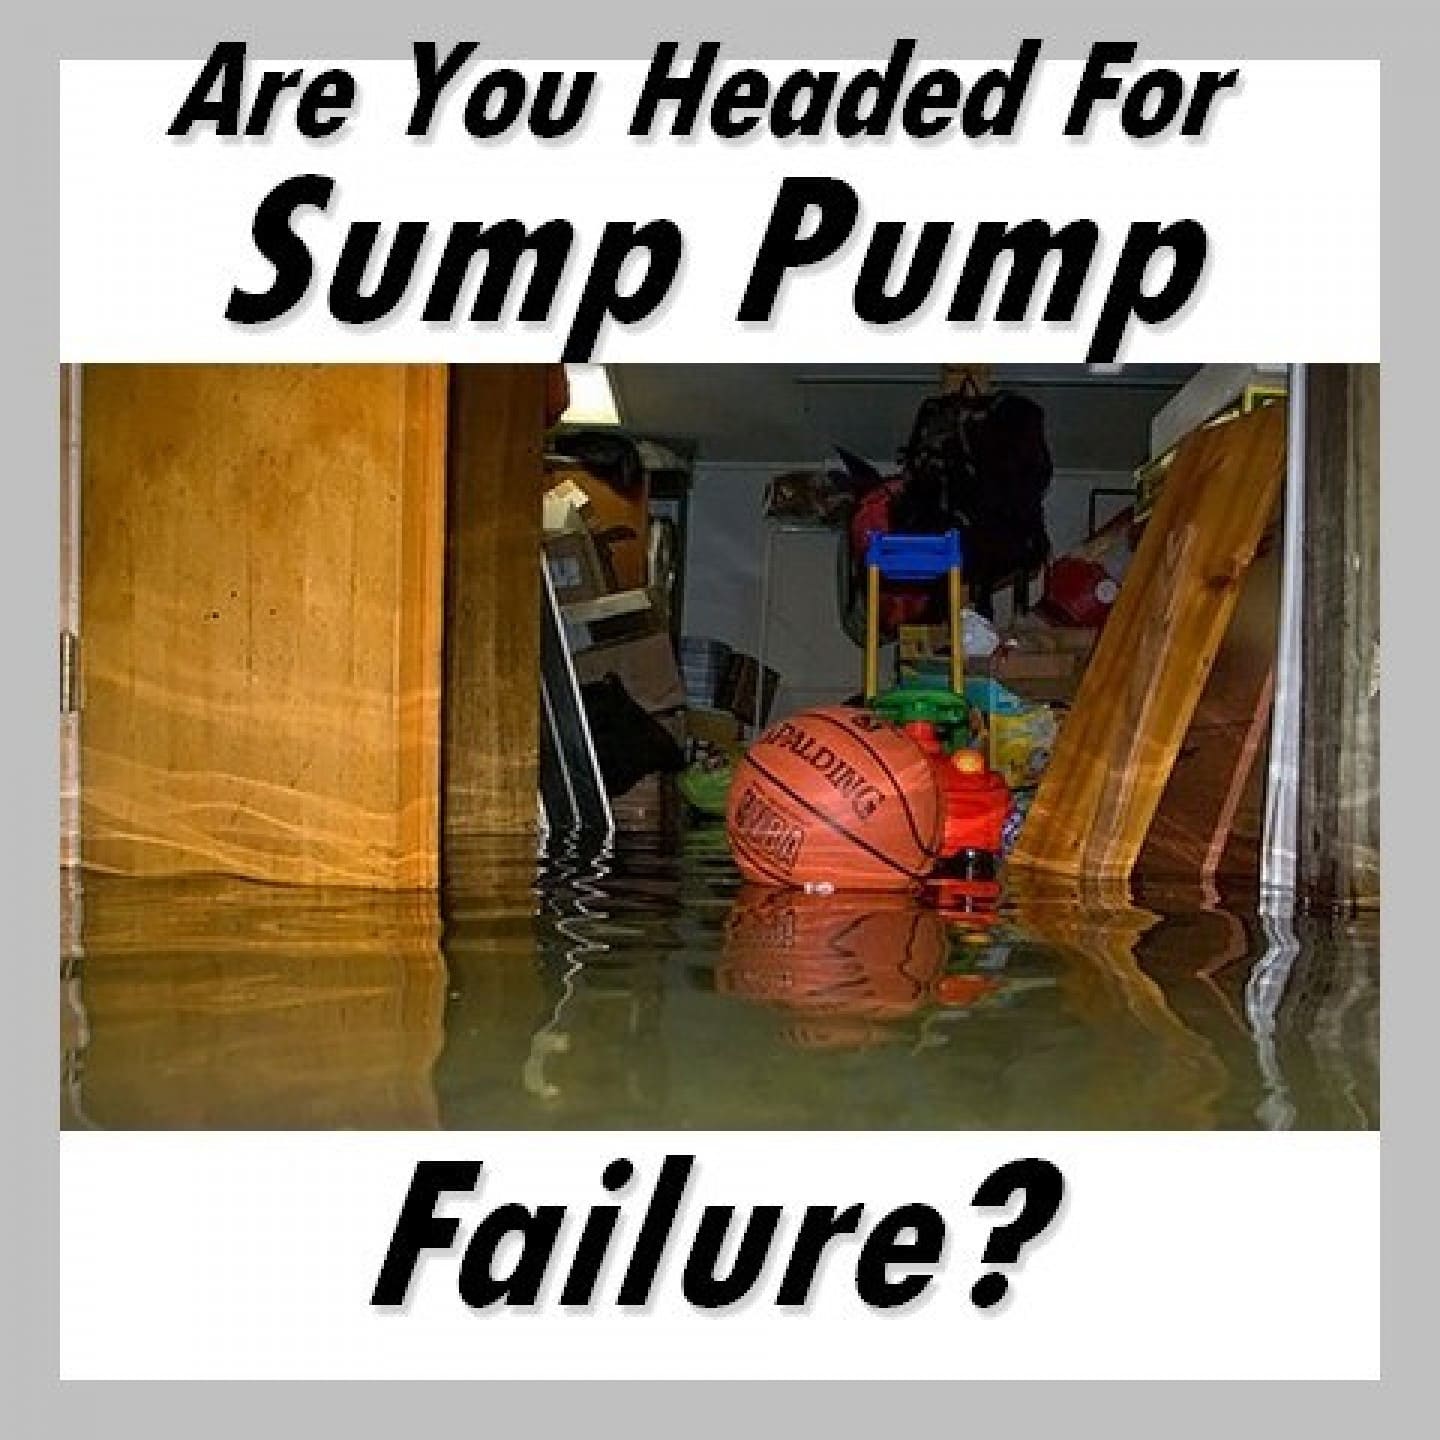 sump pump failure